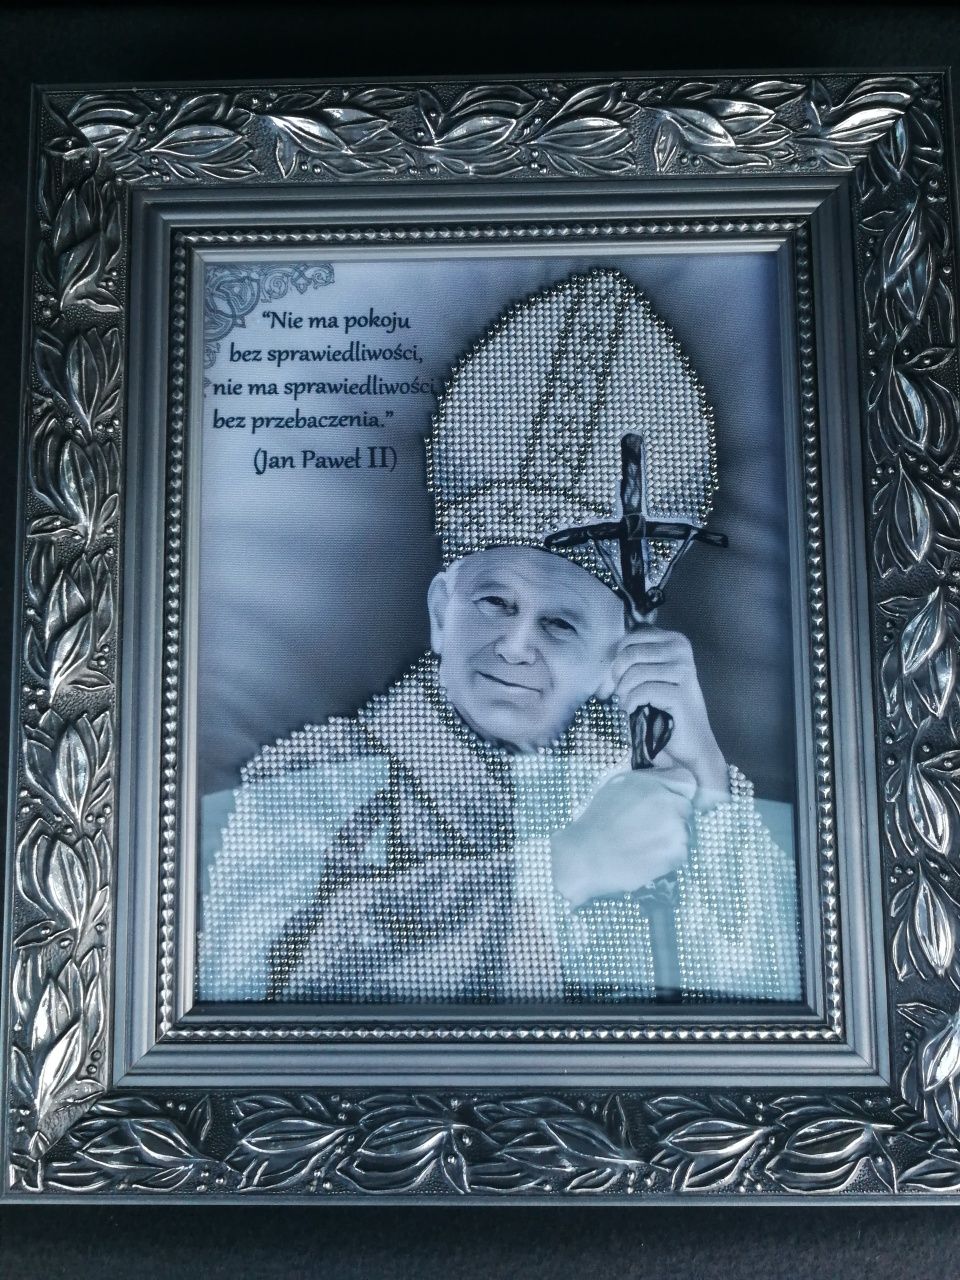 Obraz wyhaftowany koralikami. Papież. Jan Paweł II.